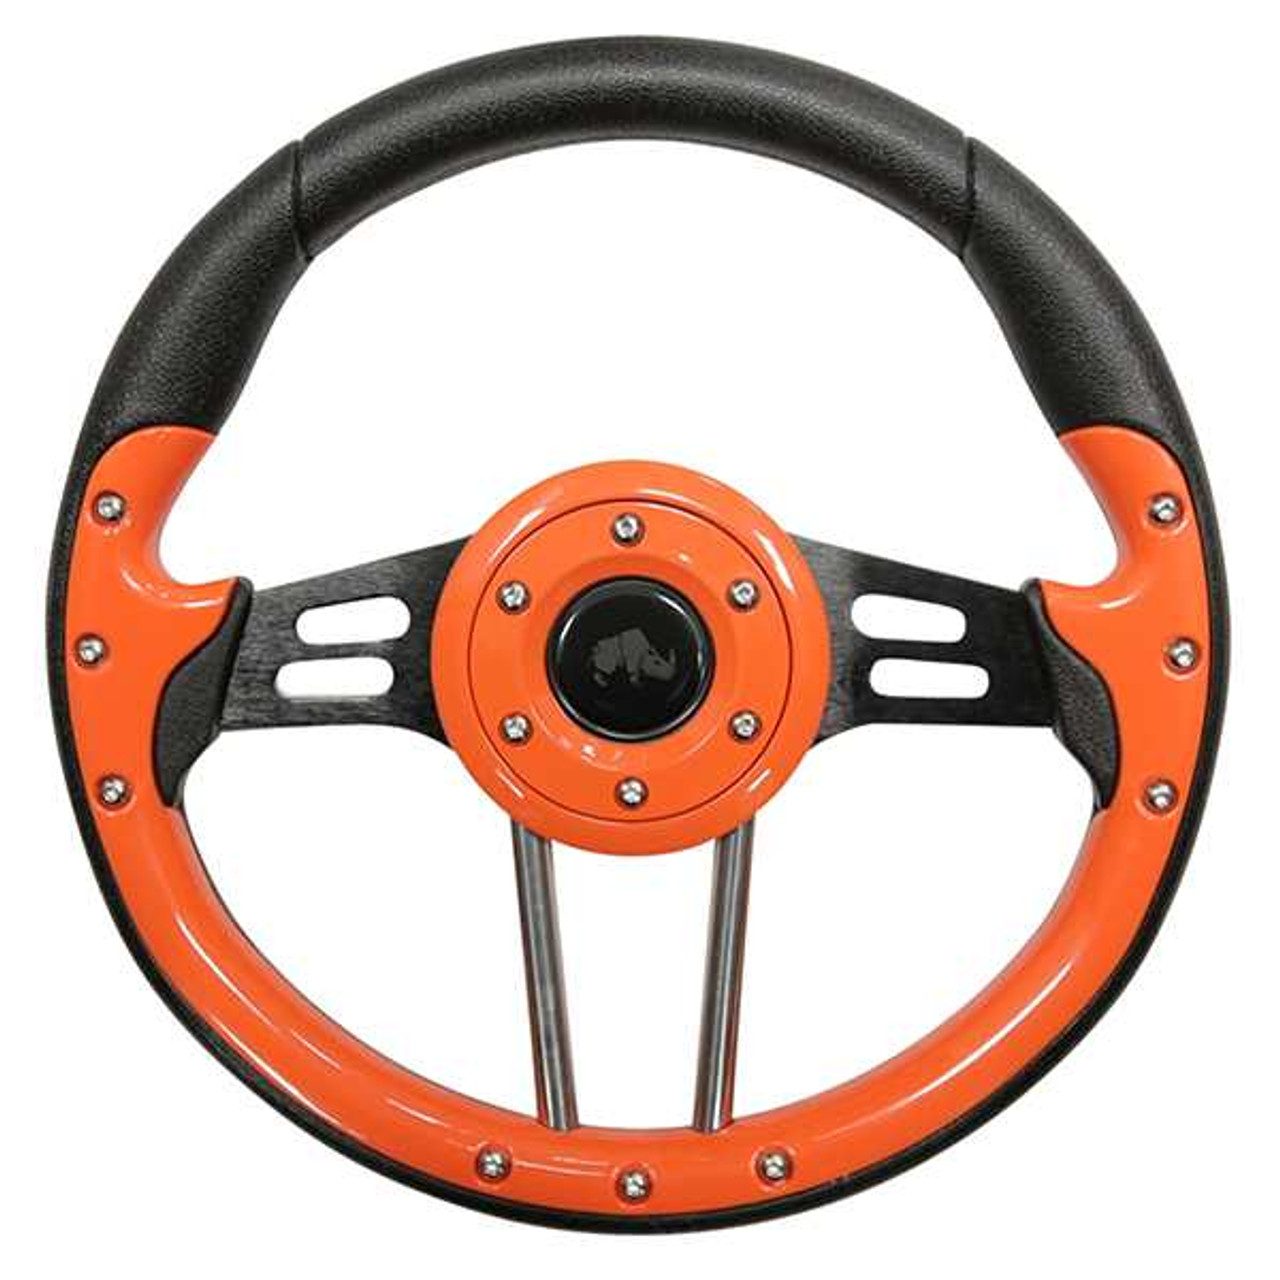 Steering Wheel, Aviator 4 Orange Grip/Black Spokes 13" Diameter